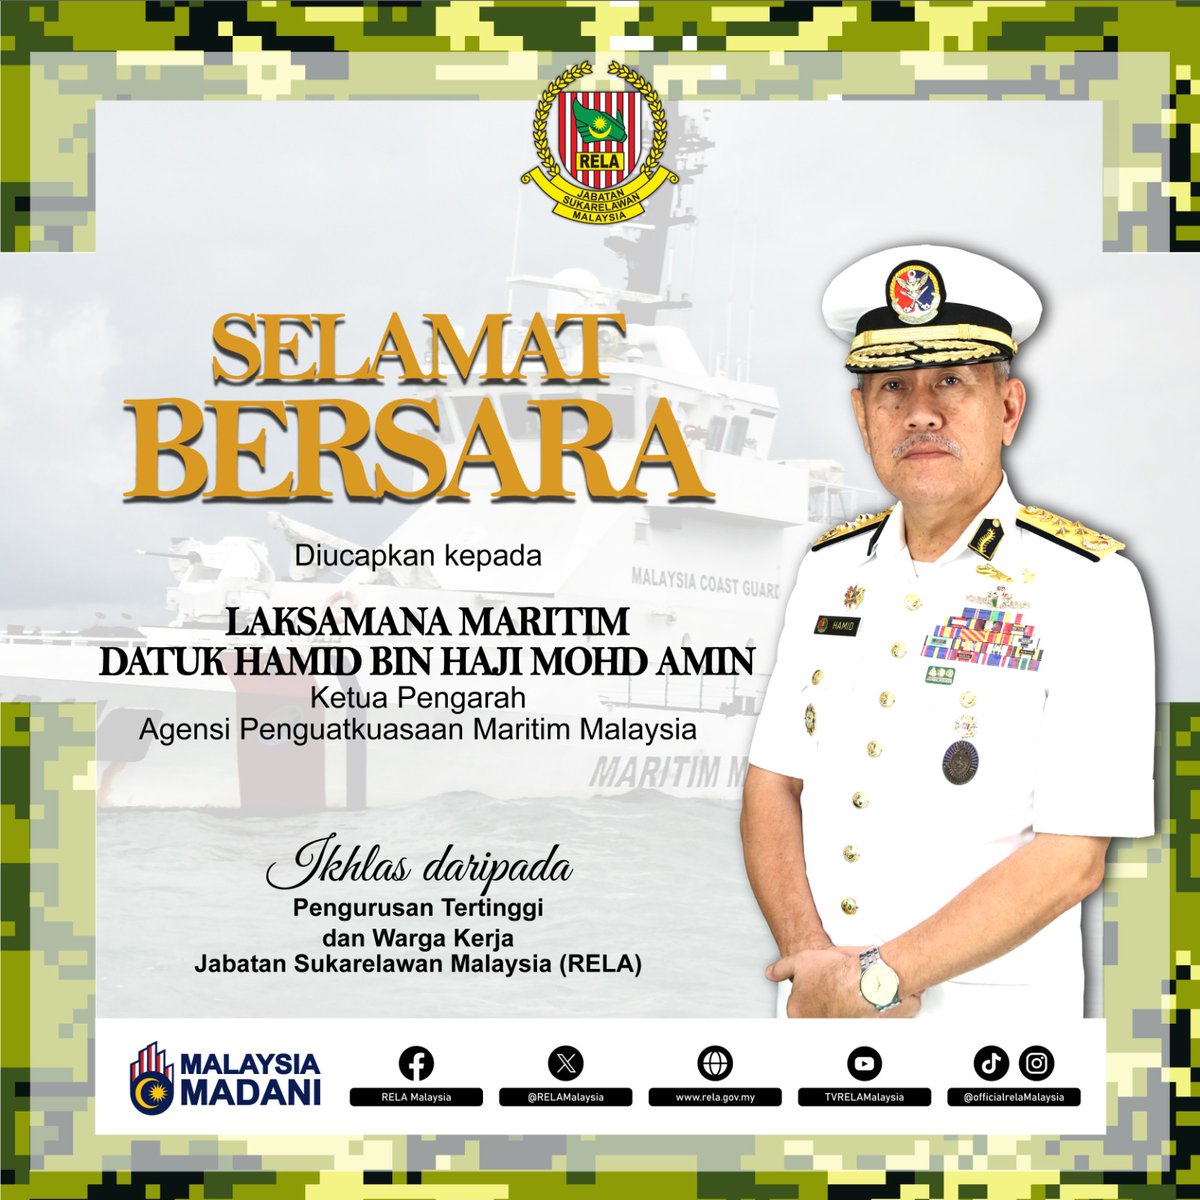 Selamat bersara diucapkan kepada mantan Ketua Pengarah Maritim Malaysia ke-6, Laksamana Maritim Datuk Hamid bin Haji Mohd Amin berkuat kuasa pada 19 April 2024 (Jumaat).
@MYCoastGuard
#SetiaBerbakti 
#RELASiapsiaga 
#MalaysiaMadani 
#KeselamatanTanggungjawabBersama